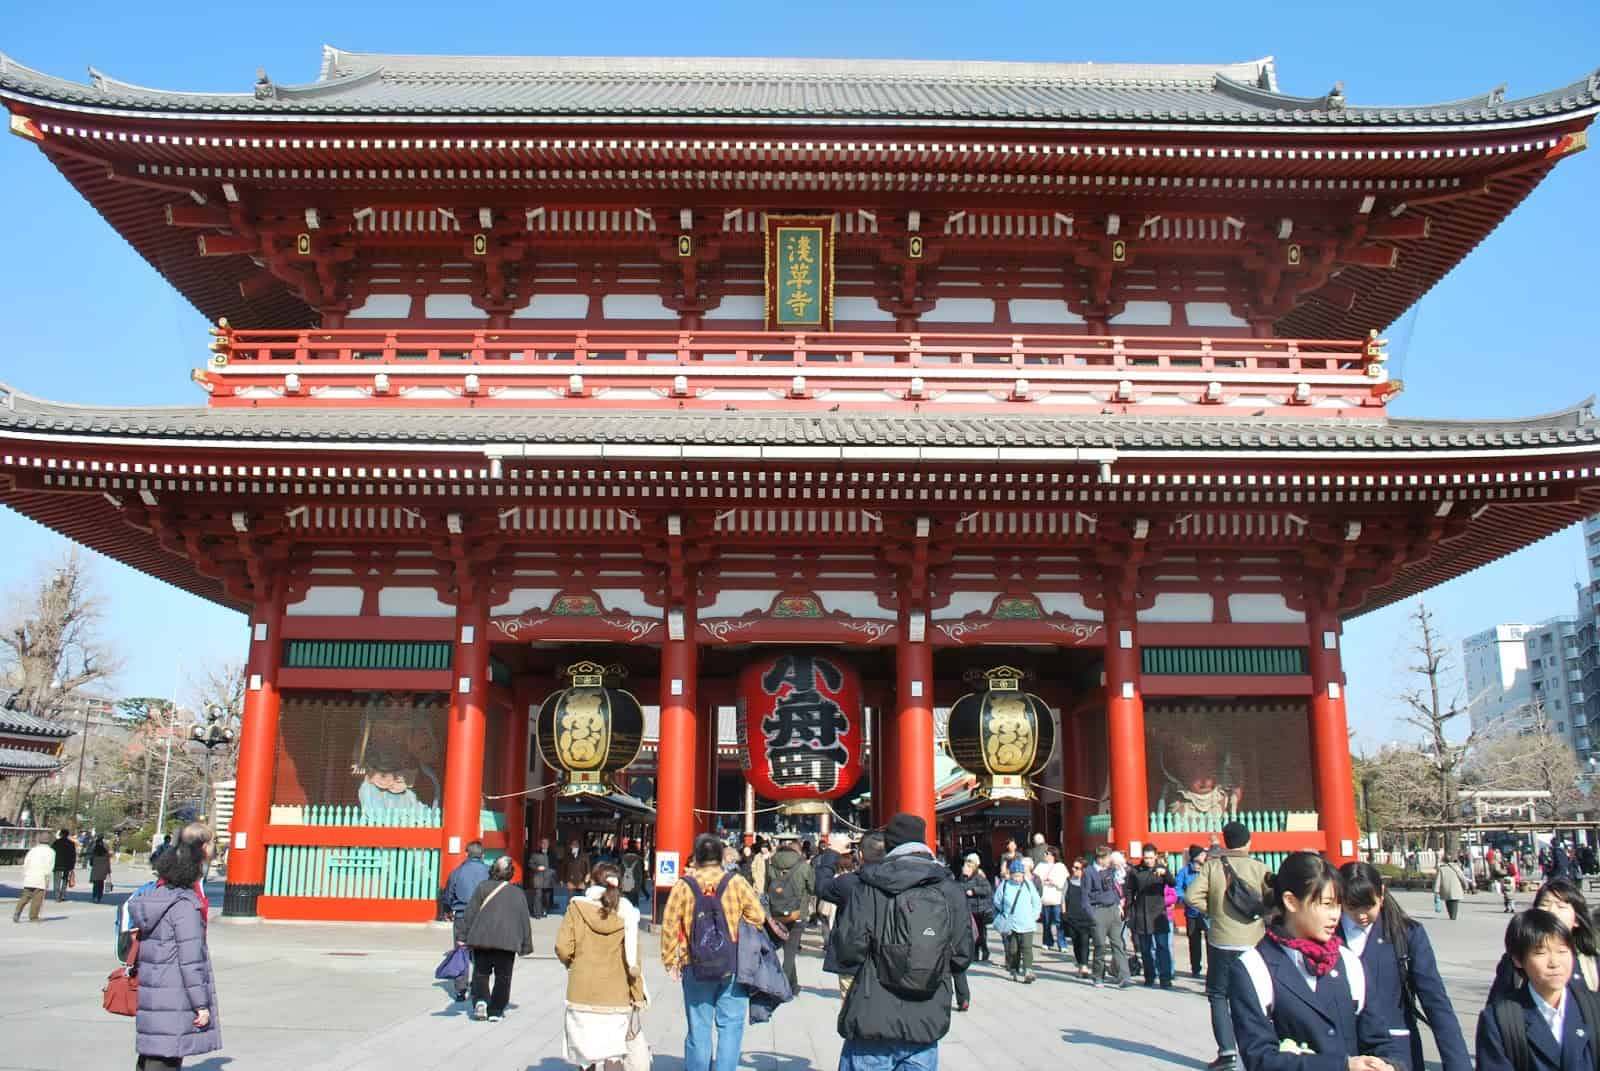 วิธีไปโตเกียว (Tokyo) - วัดอาซากุสะ หรือ วัดเซ็นโซจิ (Sensoji Temple)